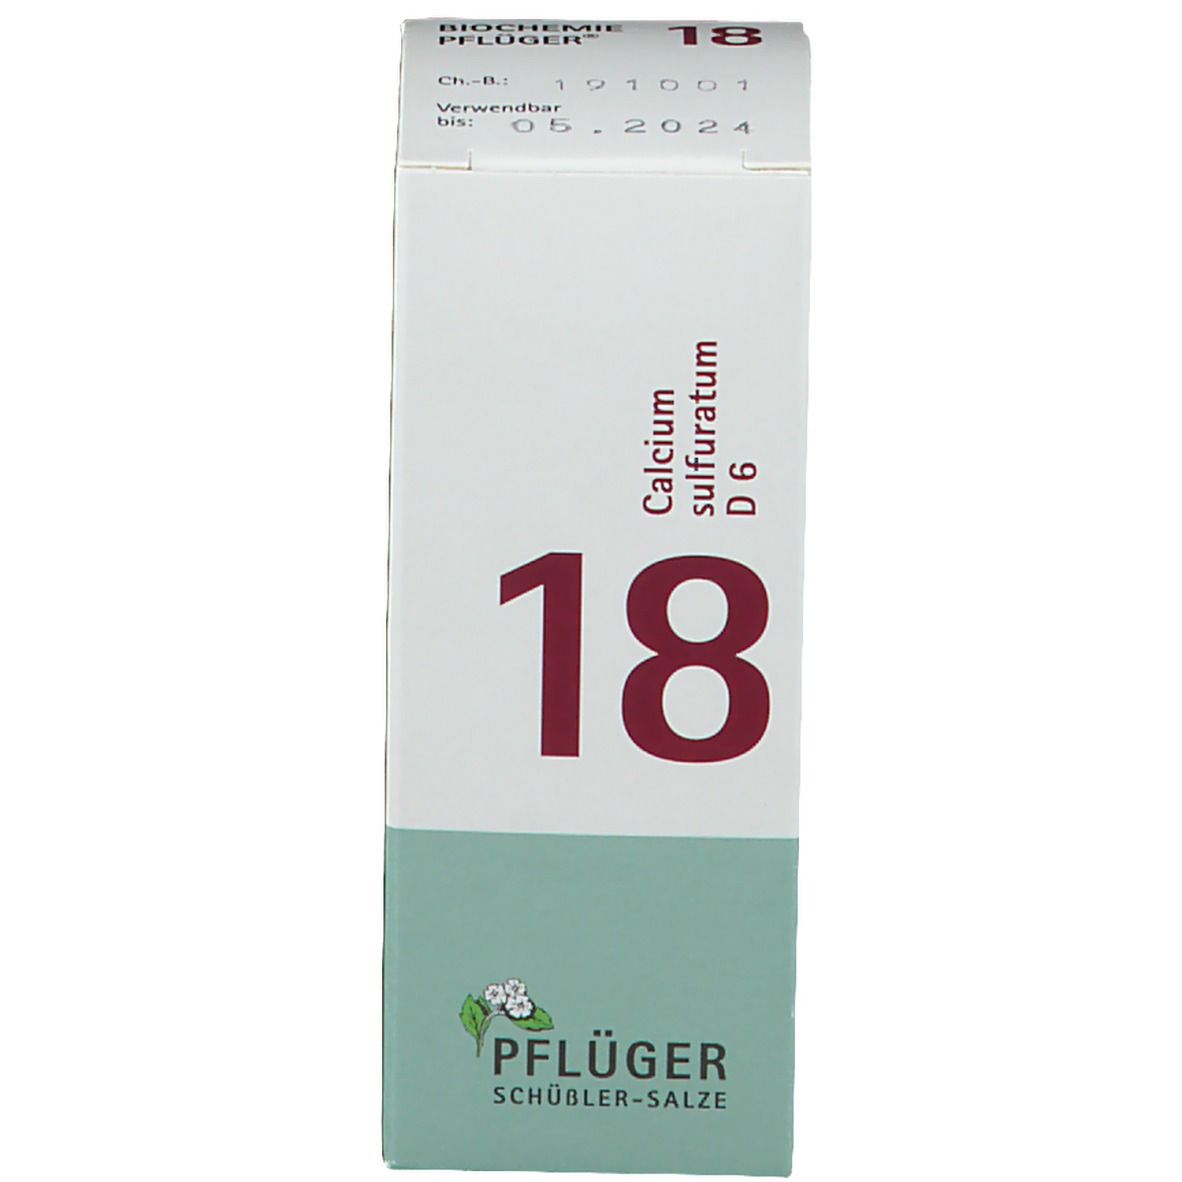 Biochemie Pflüger® Nr. 18 Calcium sulfuratum D6 Tabletten